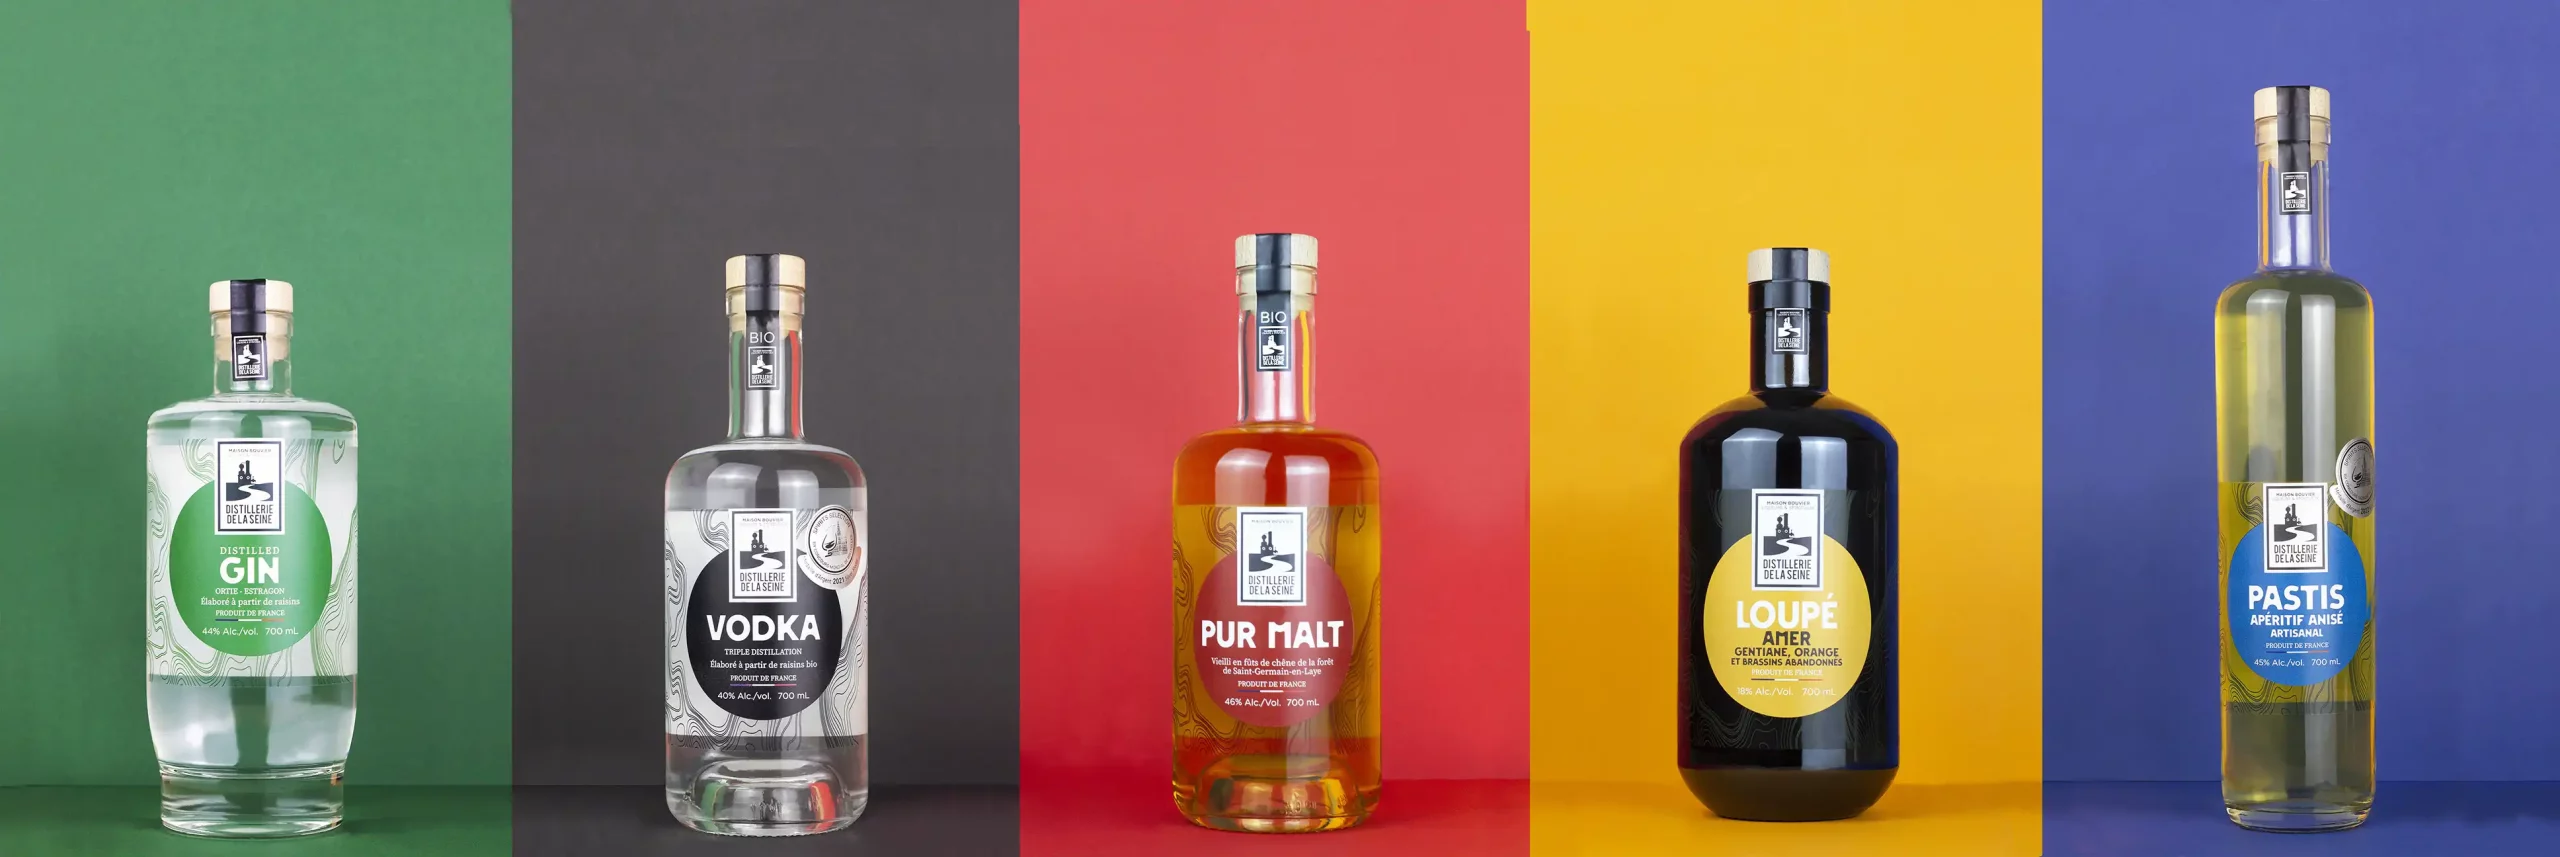 photos des cinq produits de la distillerie , à gauche le gin ensuite la vodka le pur malt le loupé et le pastis